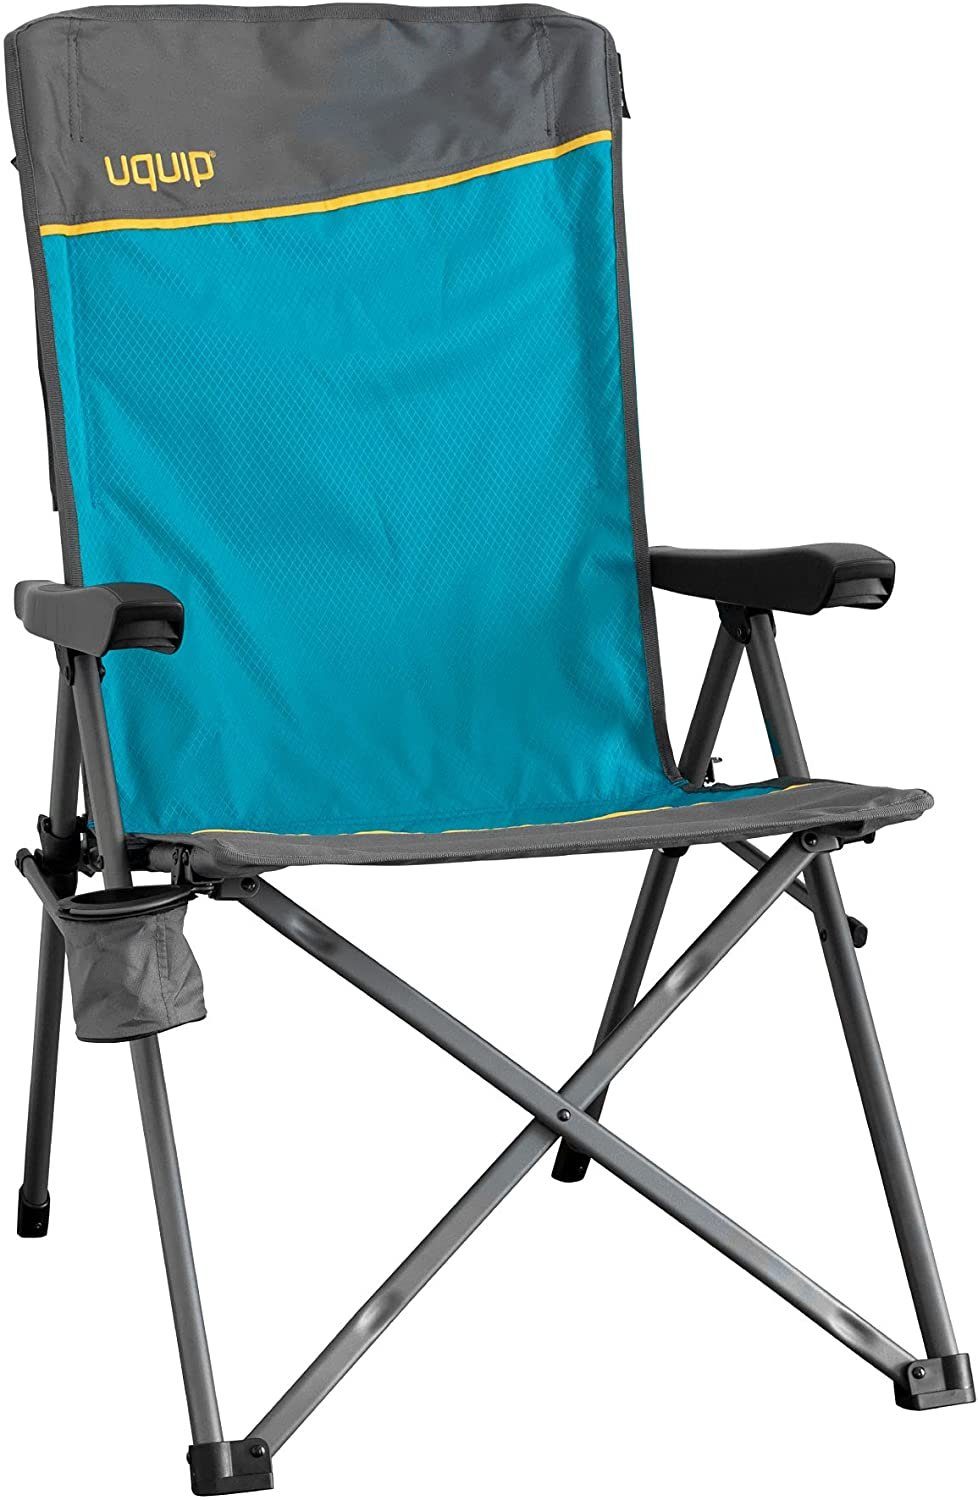 UQUIP Campingstuhl Justy - Campingstuhl mit Verstellbarer Rückenlehne,  belastbar bis 120 kg, aus reißfestem Ripstop-Polyester, mit Armlehnen